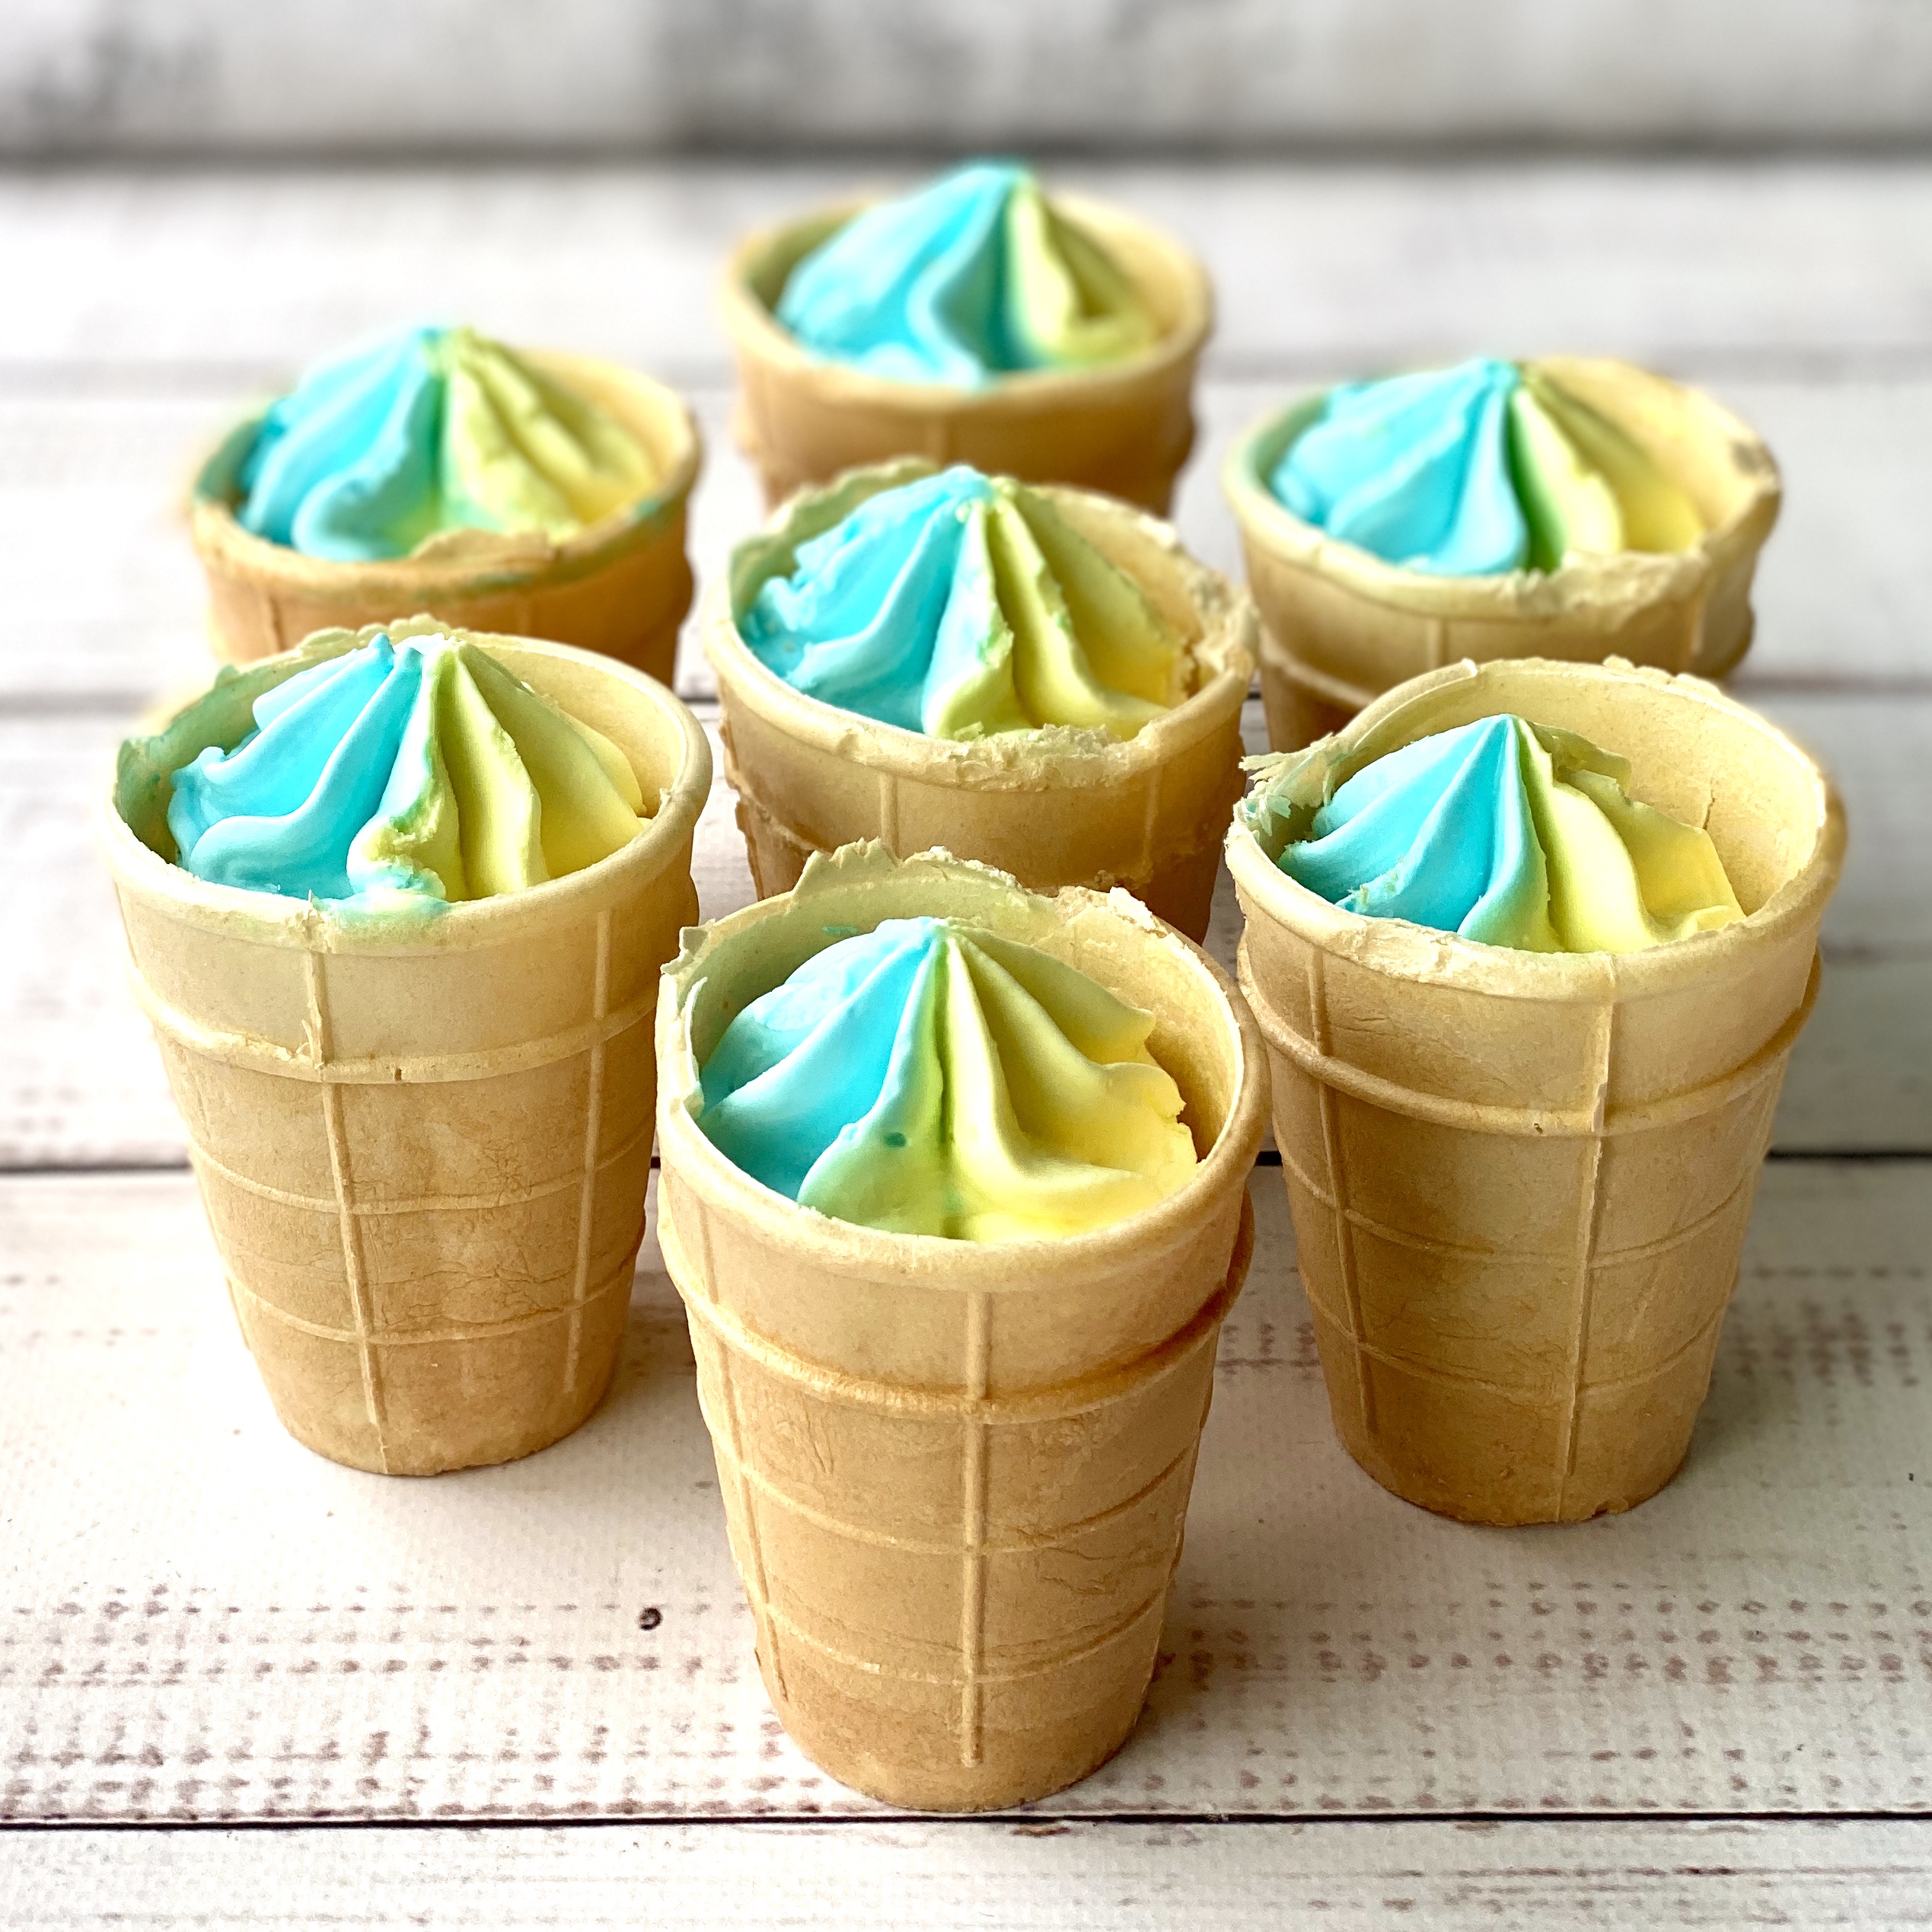 Мороженое тутти-фрути барбарис с ЗМЖ в вафельном стаканчике изображение 4